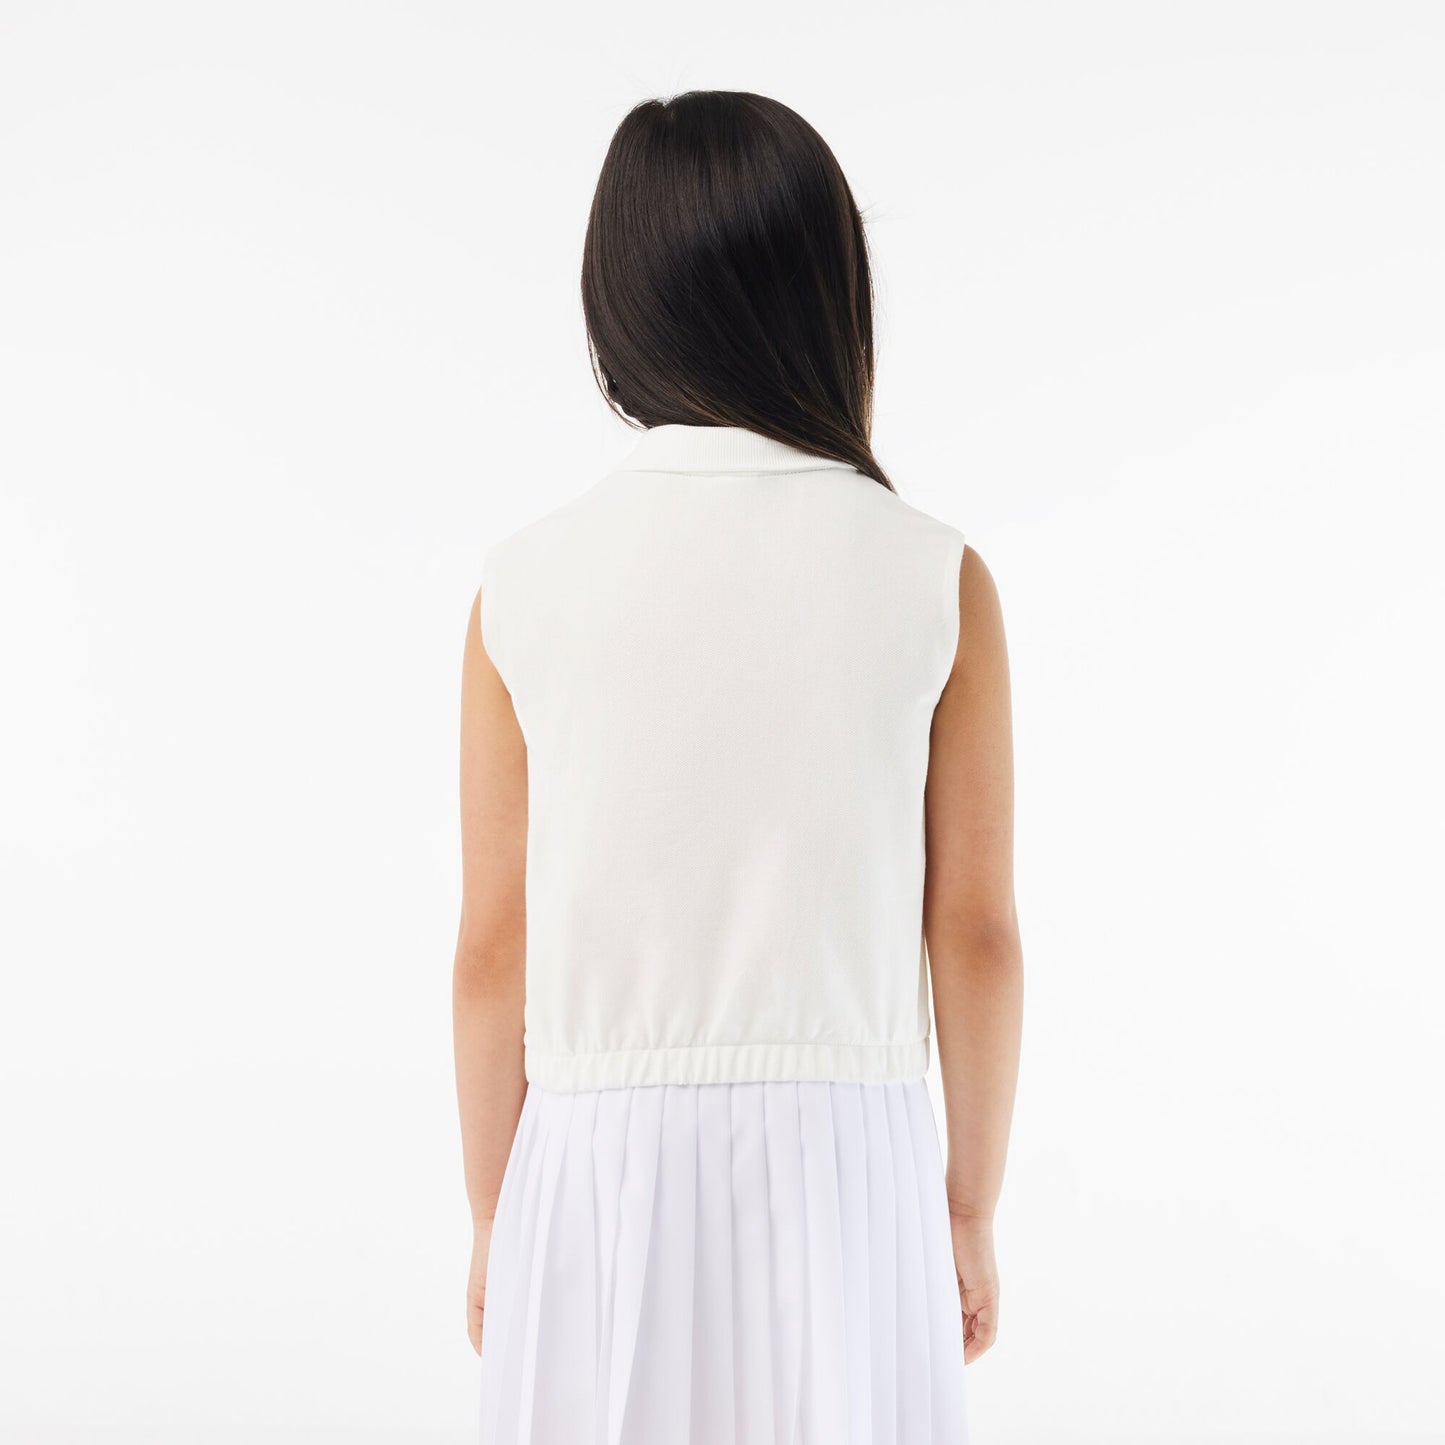 Girls’ Lacoste Cotton Piqué Sleeveless Polo Shirt - PJ5262